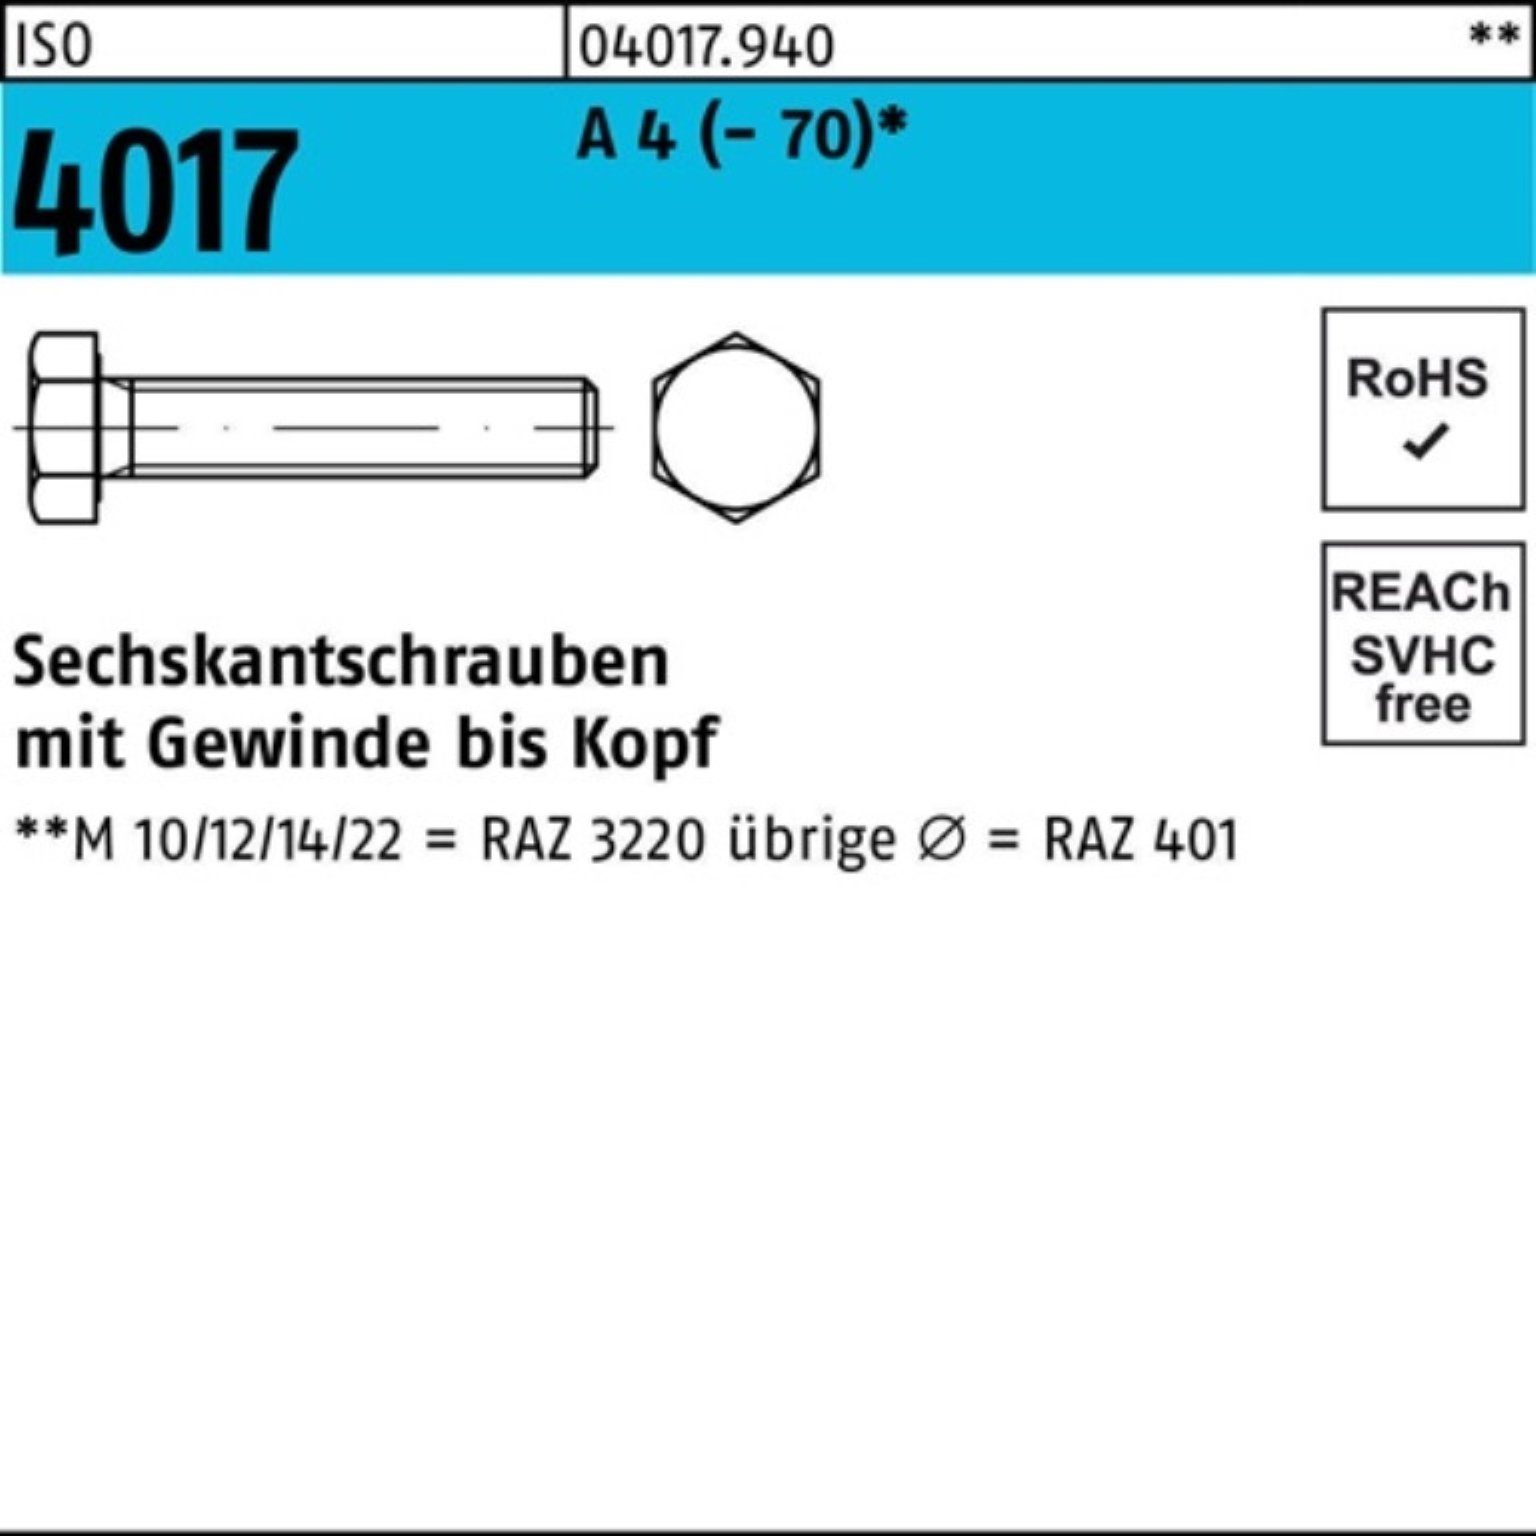 Bufab Sechskantschraube 100er Pack Sechskantschraube ISO 4017 VG M18x 80 A 4 (70) 1 Stück I